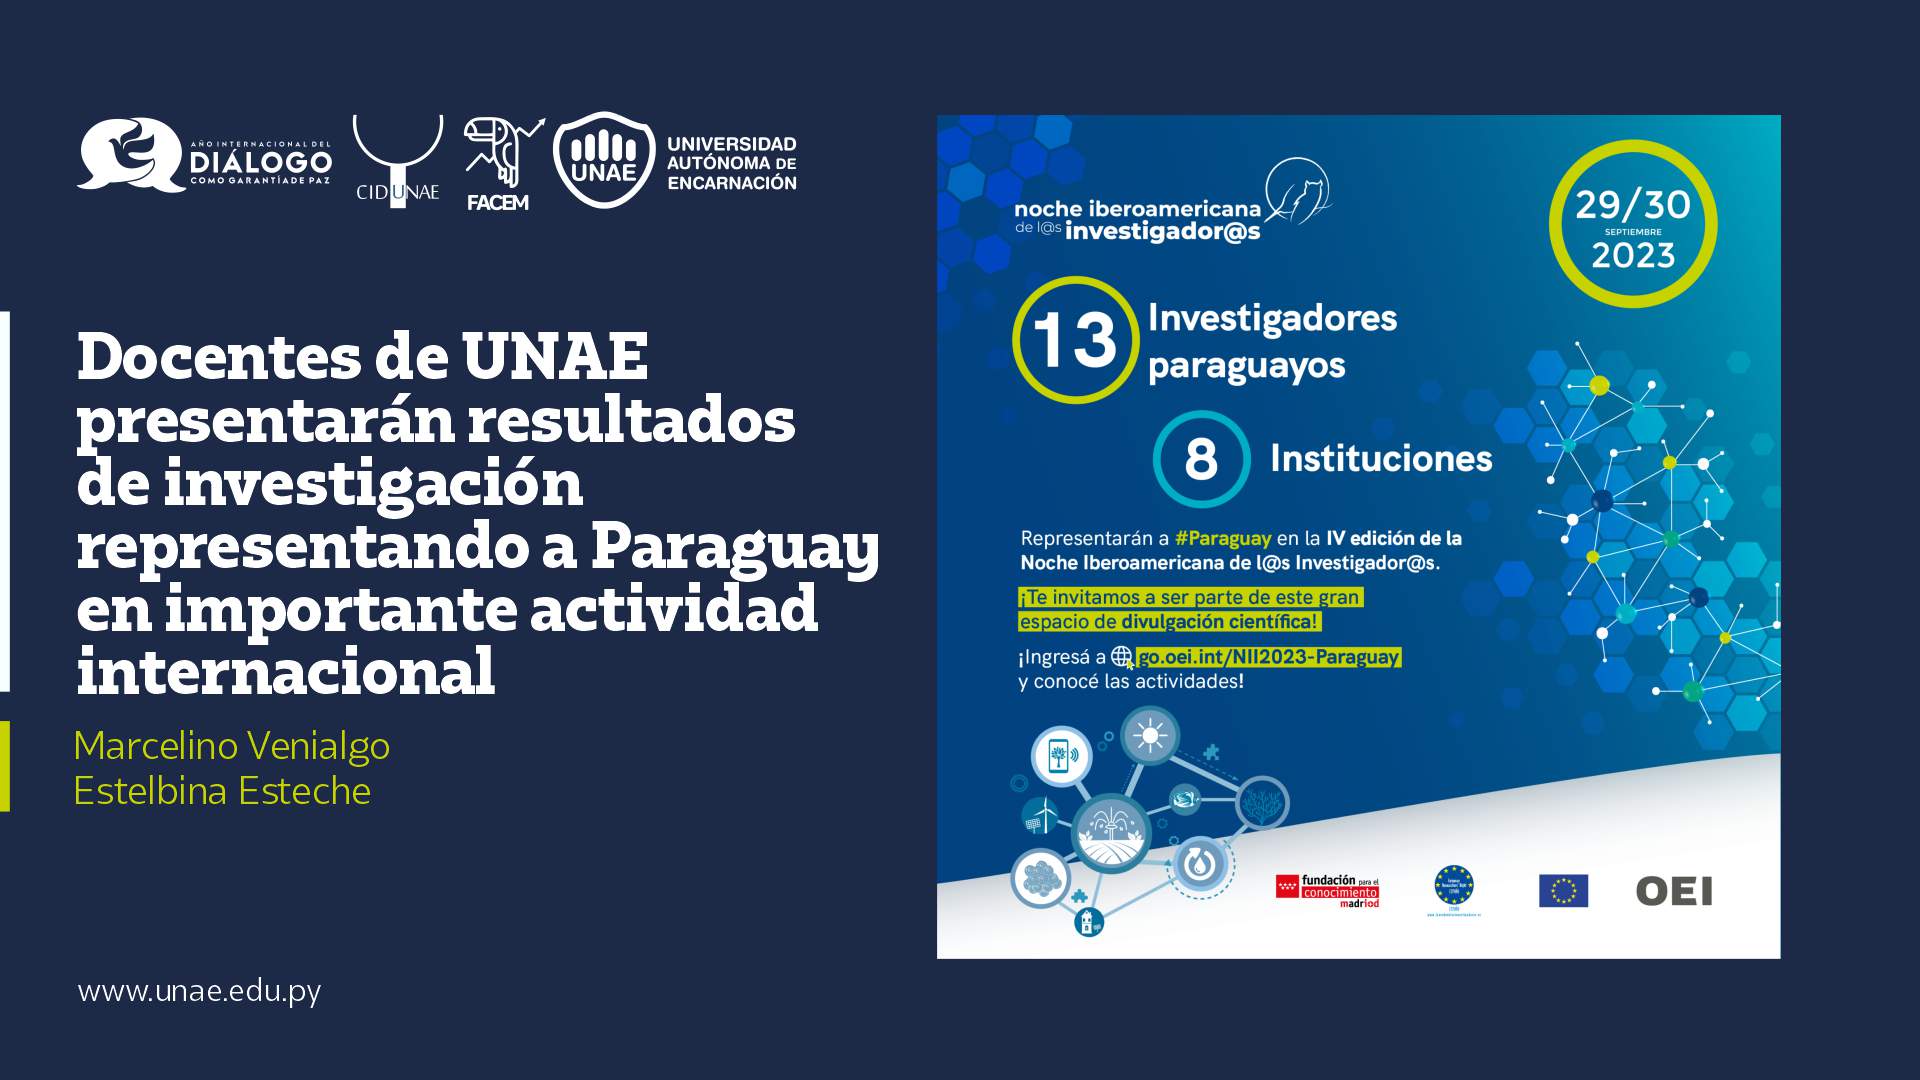 Docentes de UNAE presentarán resultados de investigación representando a Paraguay en importante actividad internacional